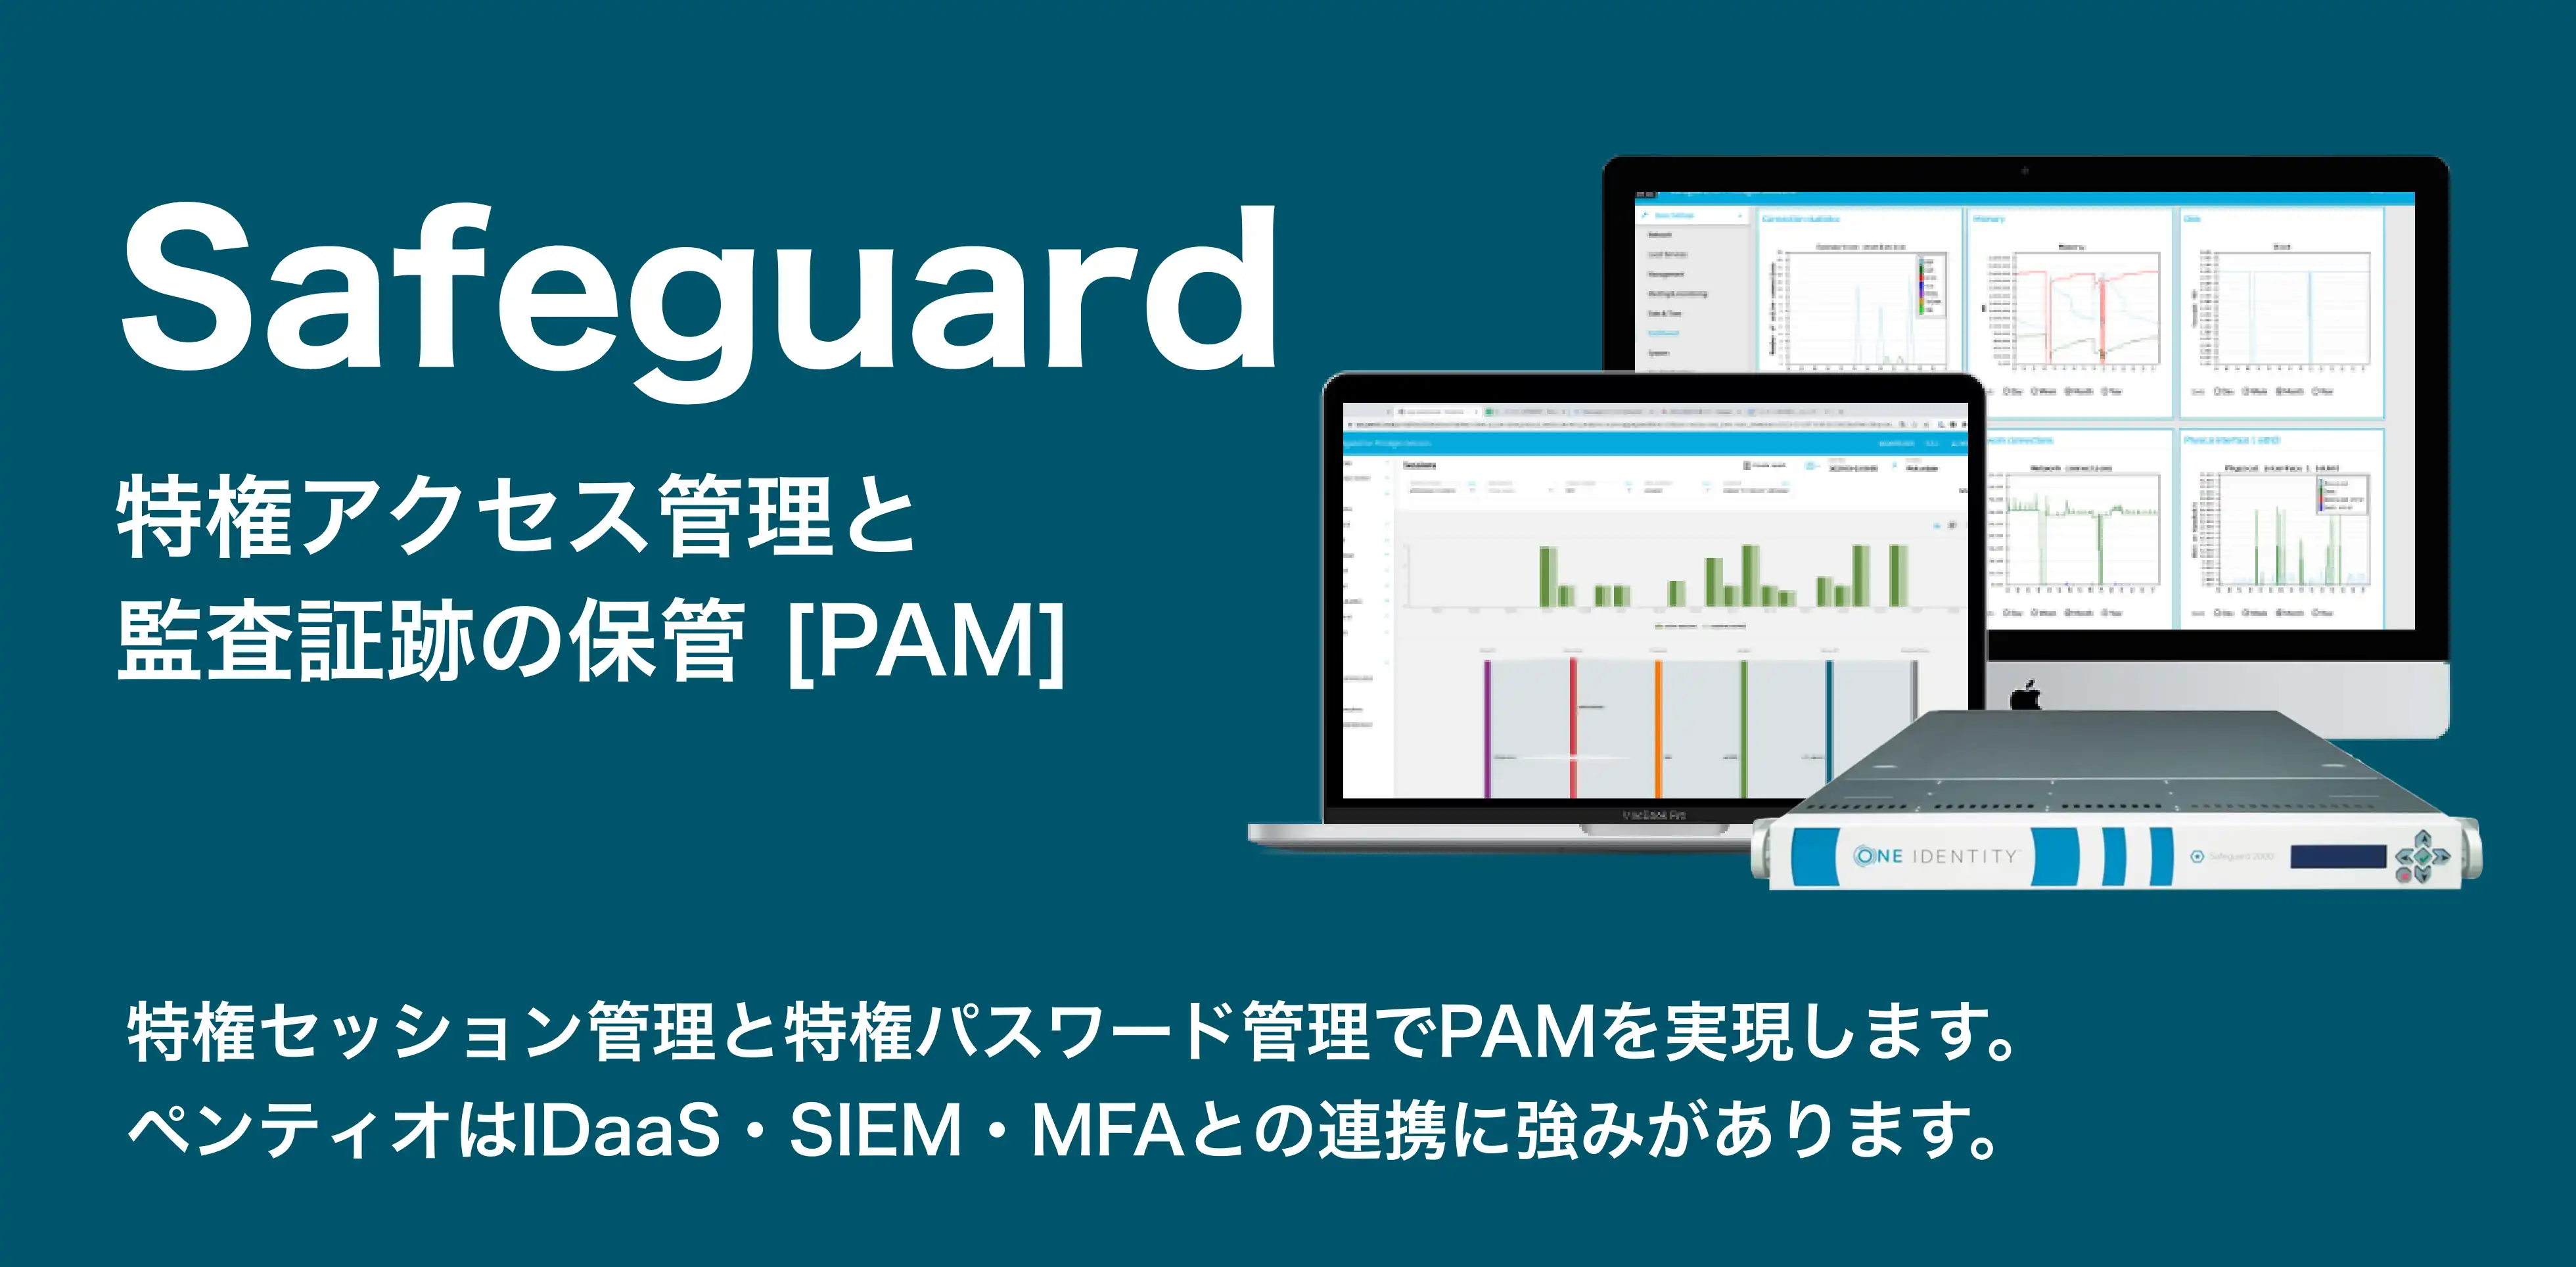 特権アクセス管理と監査証跡の保管 PAM Safeguard